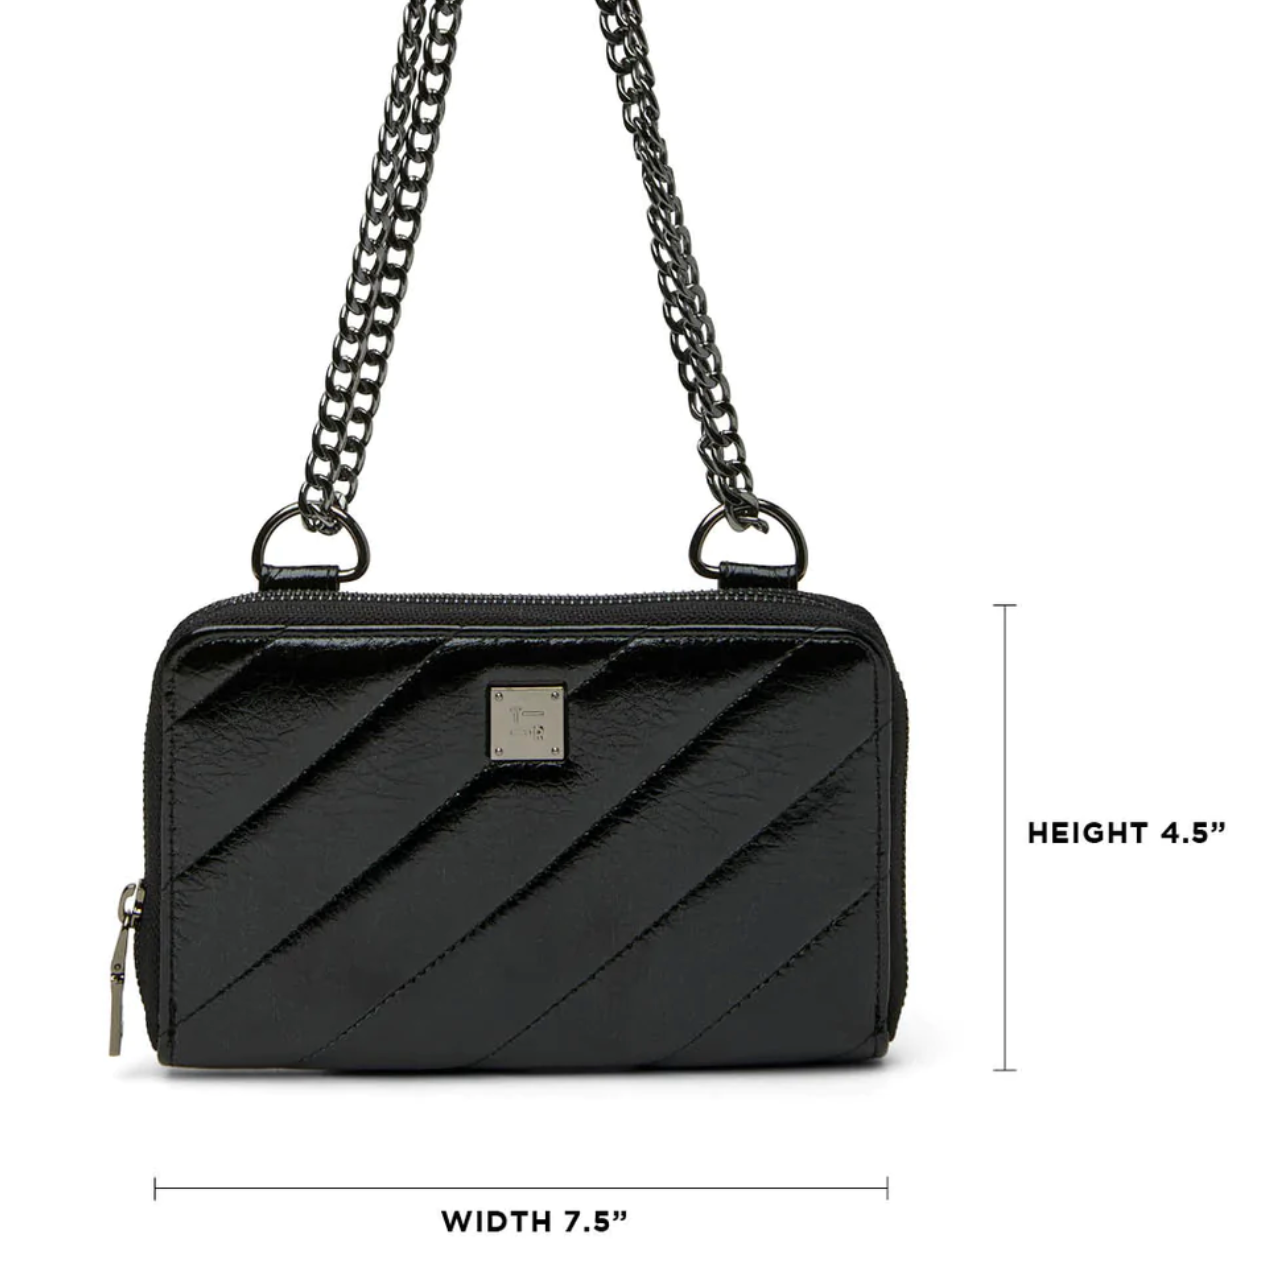 The Starlet Wallet Bag